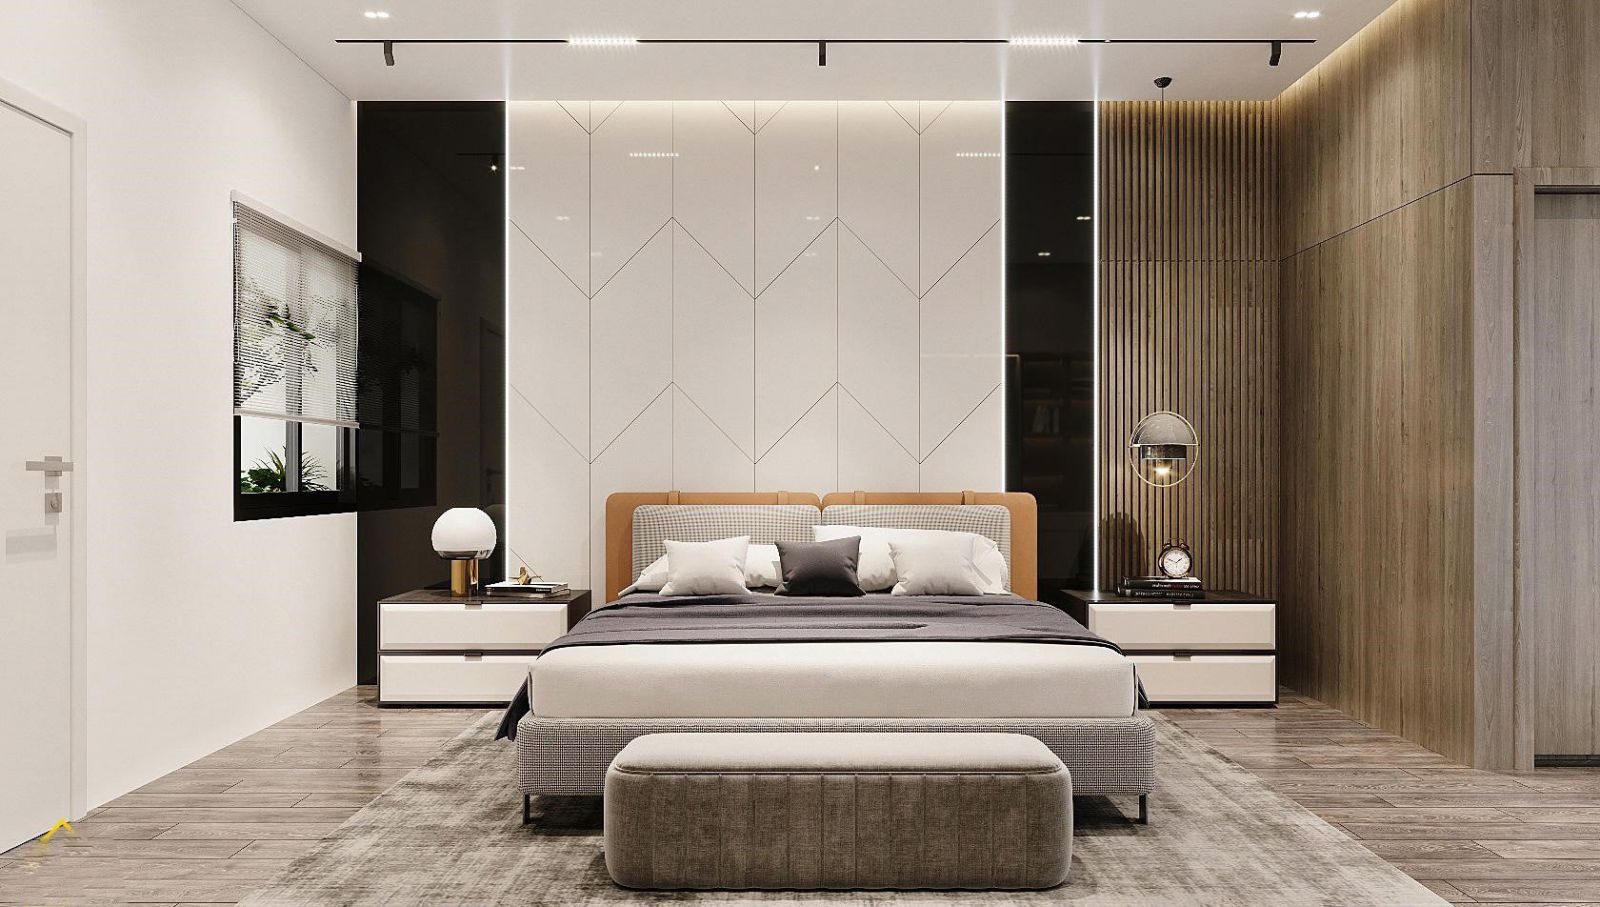 Tủ trang trí phòng ngủ - Những xu hướng mới cho không gian phòng ngủ của bạn